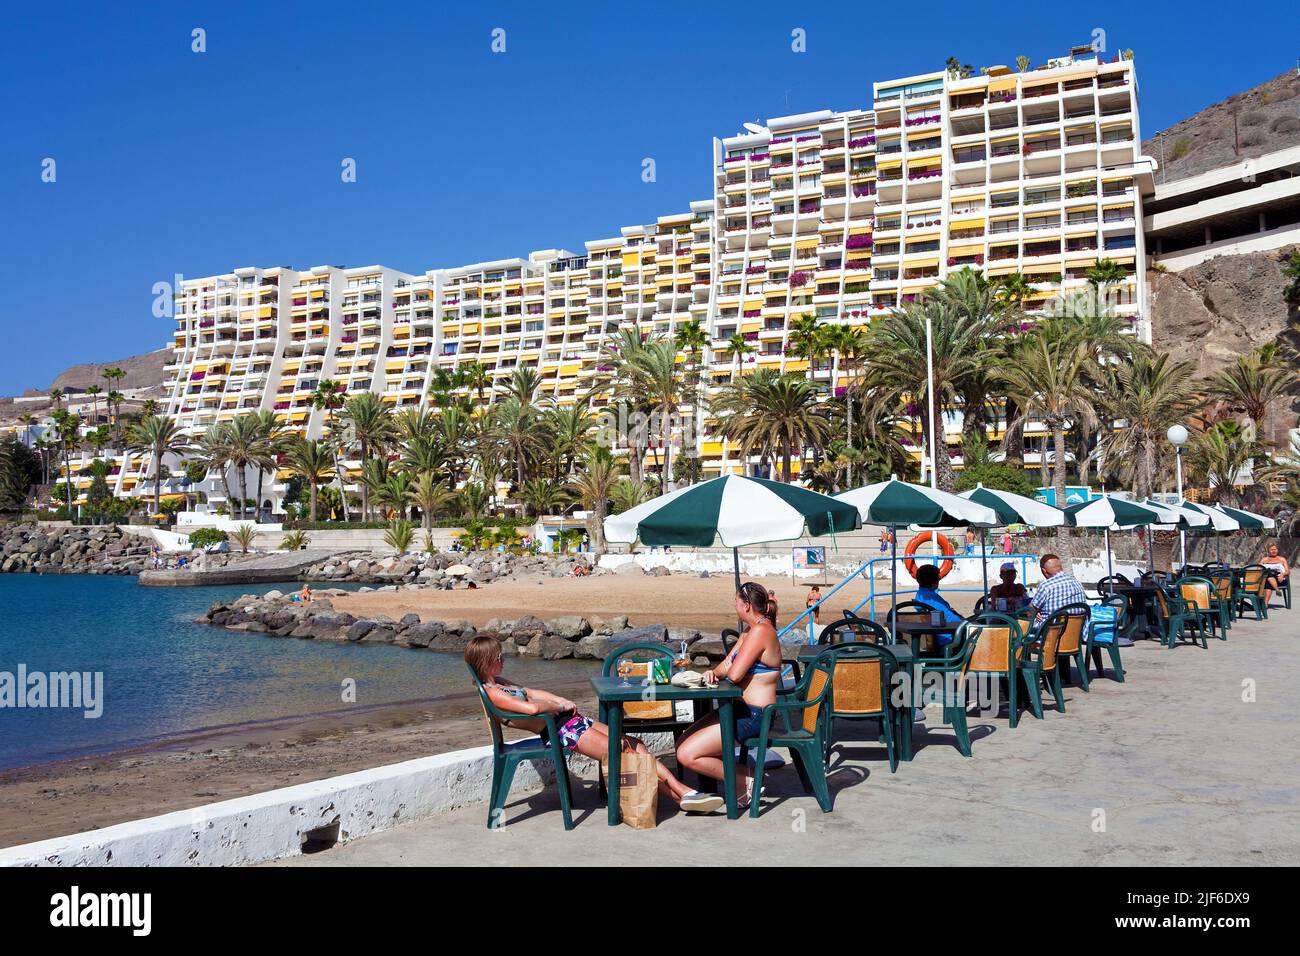 Strandbar in einem Ferienort, Anfi del Mar, Arguineguin, Kanarische Inseln, Spanien, Europa Stockfoto